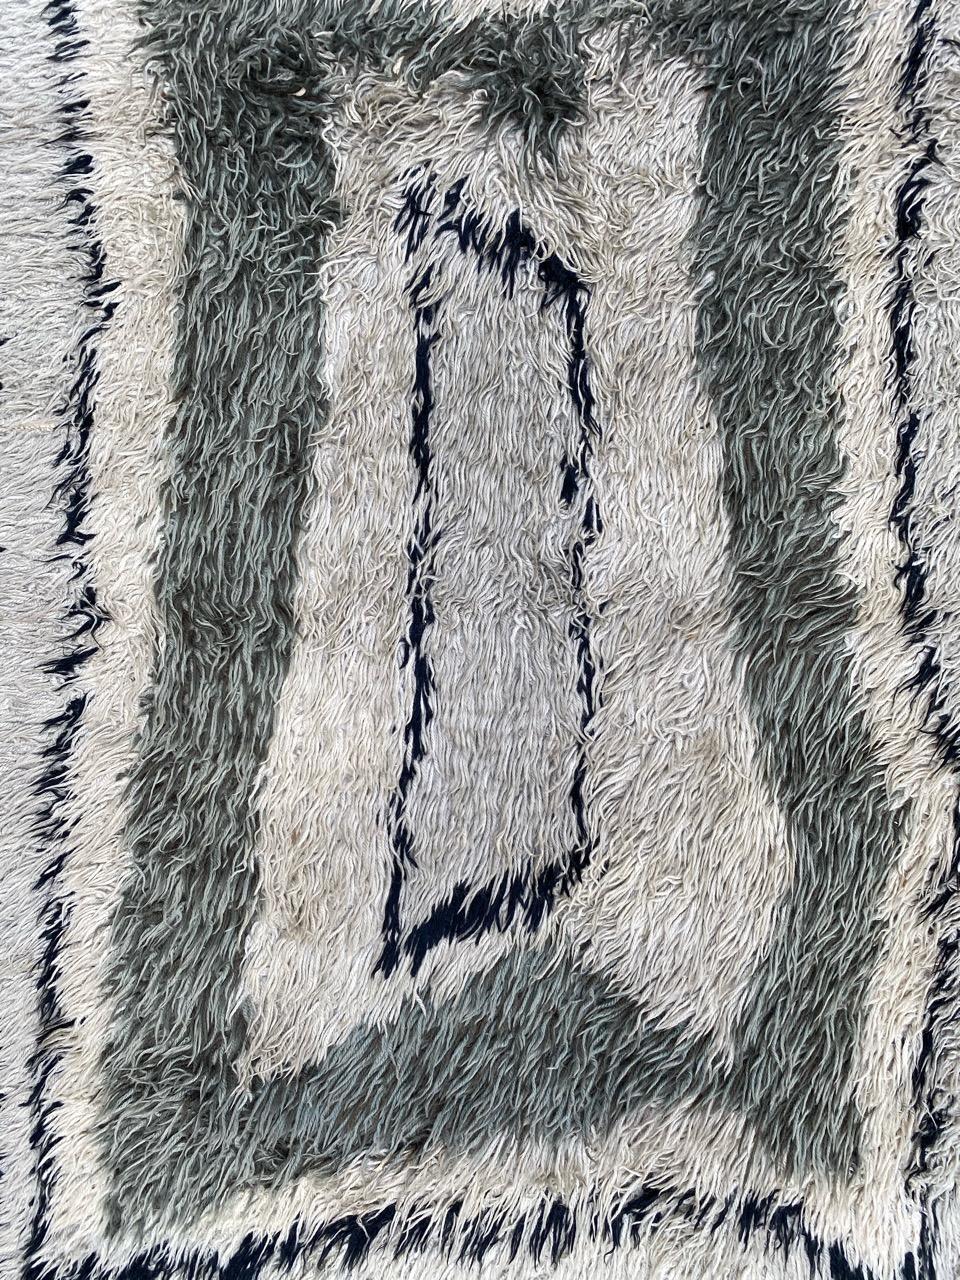 Joli tapis scandinave au design moderne avec de belles couleurs claires, entièrement noué à la main avec du velours de laine sur une base de coton.